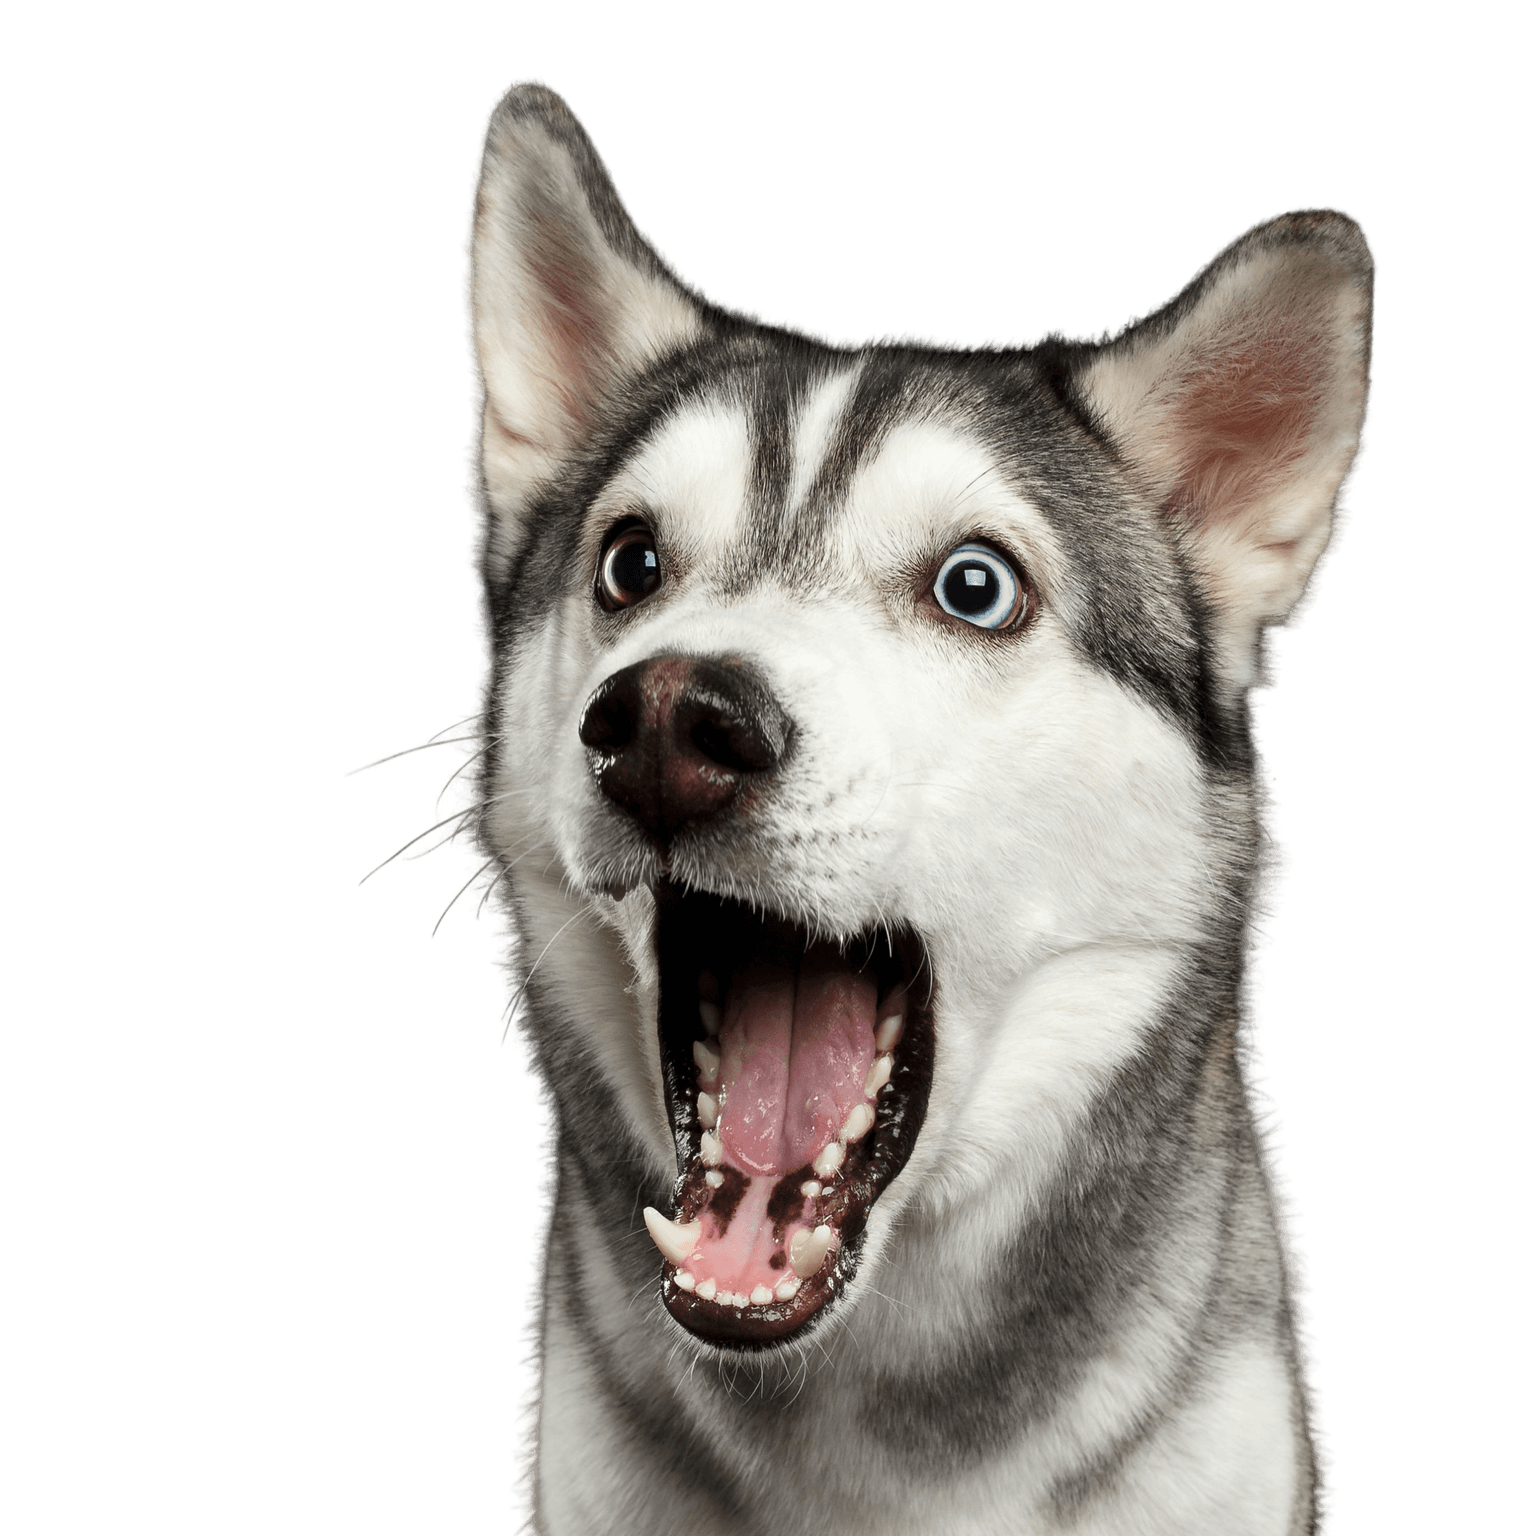 Perro, mamífero, Husky siberiano con la boca abierta asombrada, vertebrado, Canidae, raza de perro, expresión facial, carnívoro, raza similar al Alaskan Malamute, perro similar al Inuit del Norte,